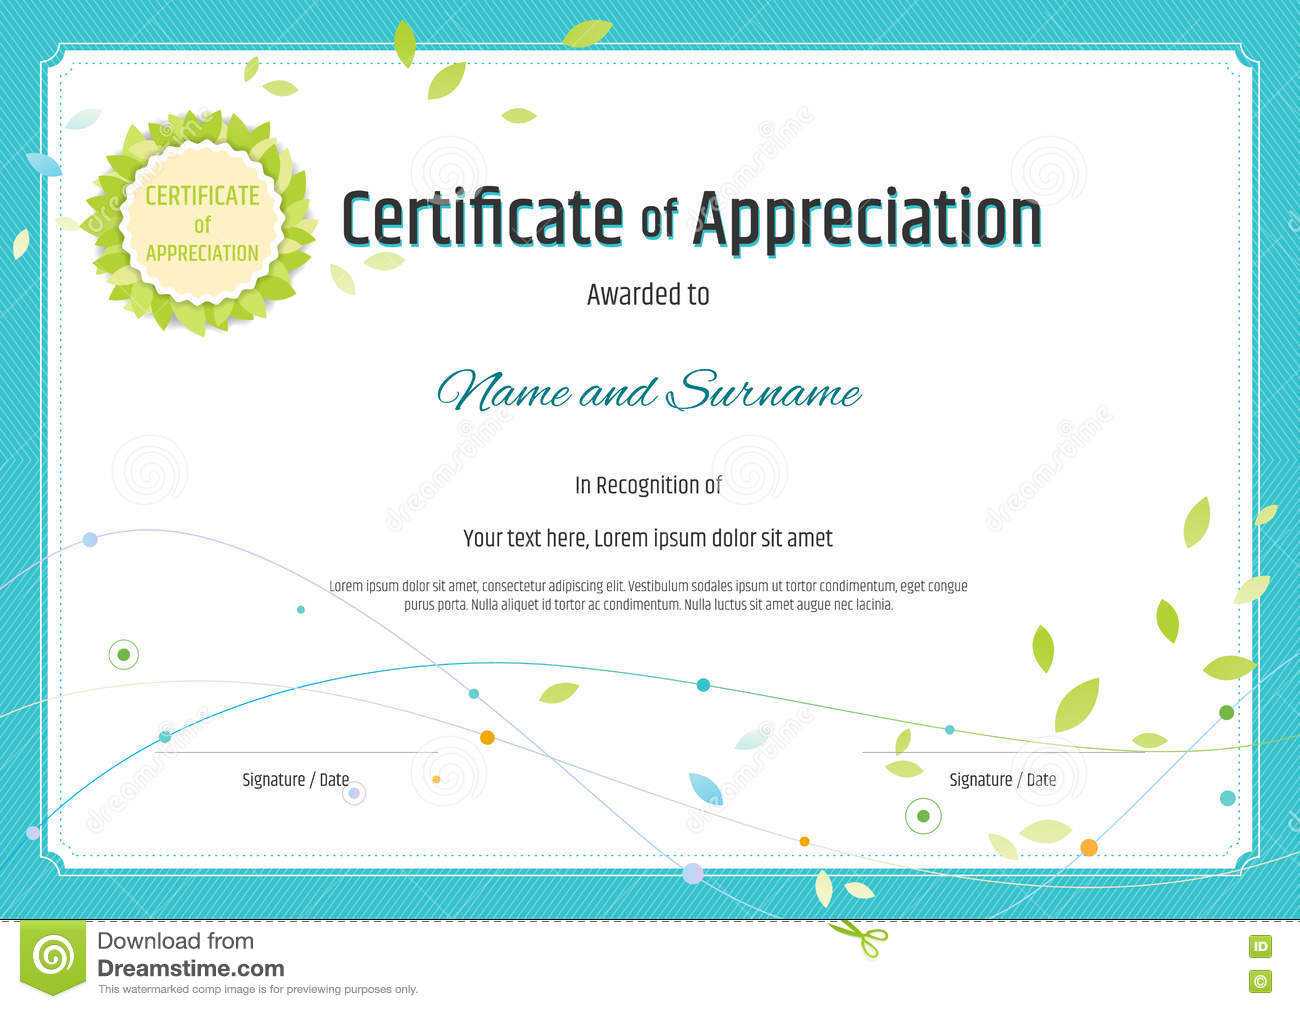 Certificate Of Appreciation Template In Nature Theme With With Free Certificate Of Appreciation Template Downloads